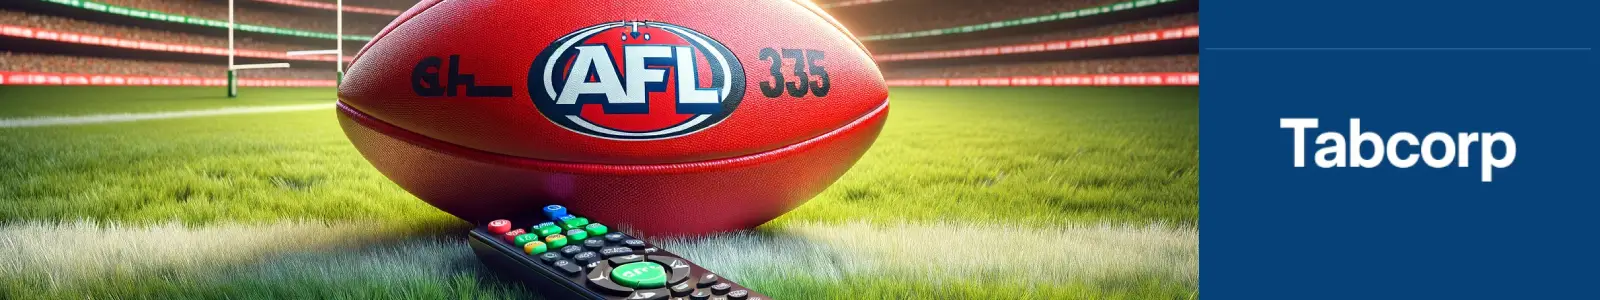 Australia gambling ads AFL